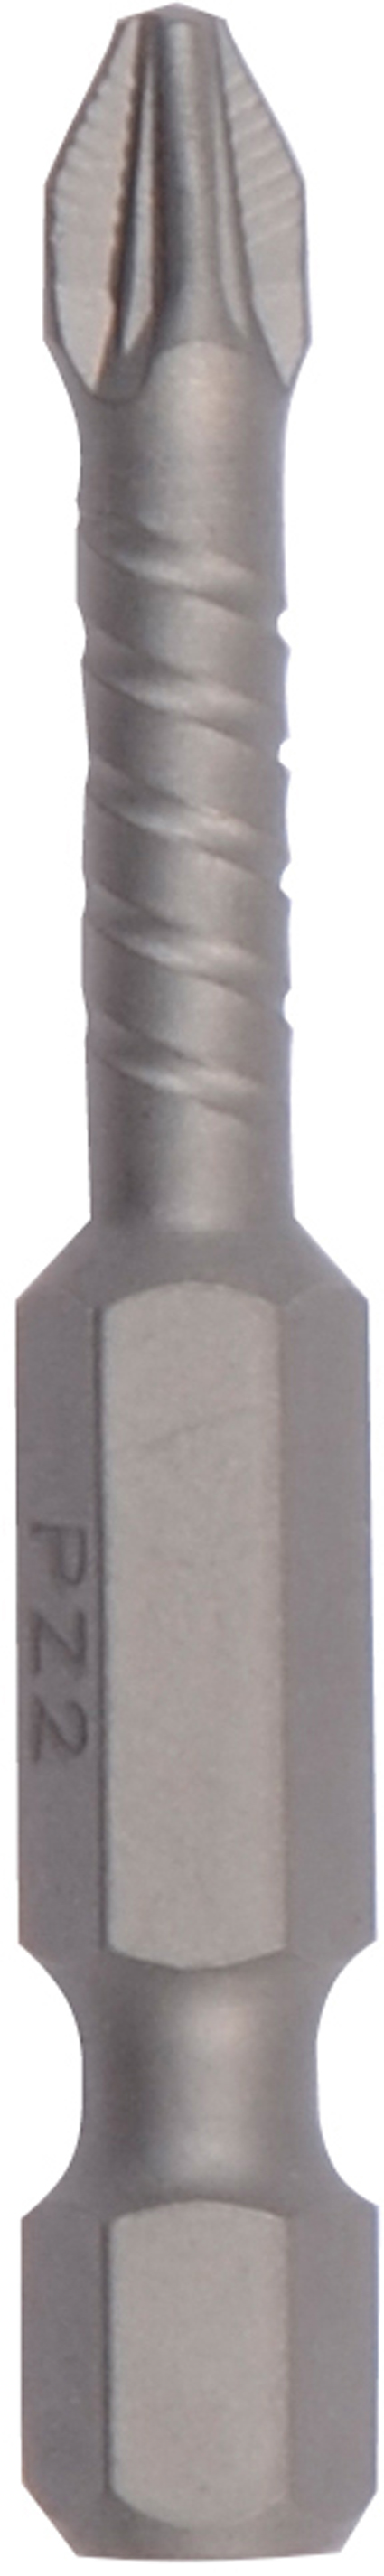 1/4" Embout torsion ACR2 L25 mm Pozidriv Nr 2 Boite de 3 